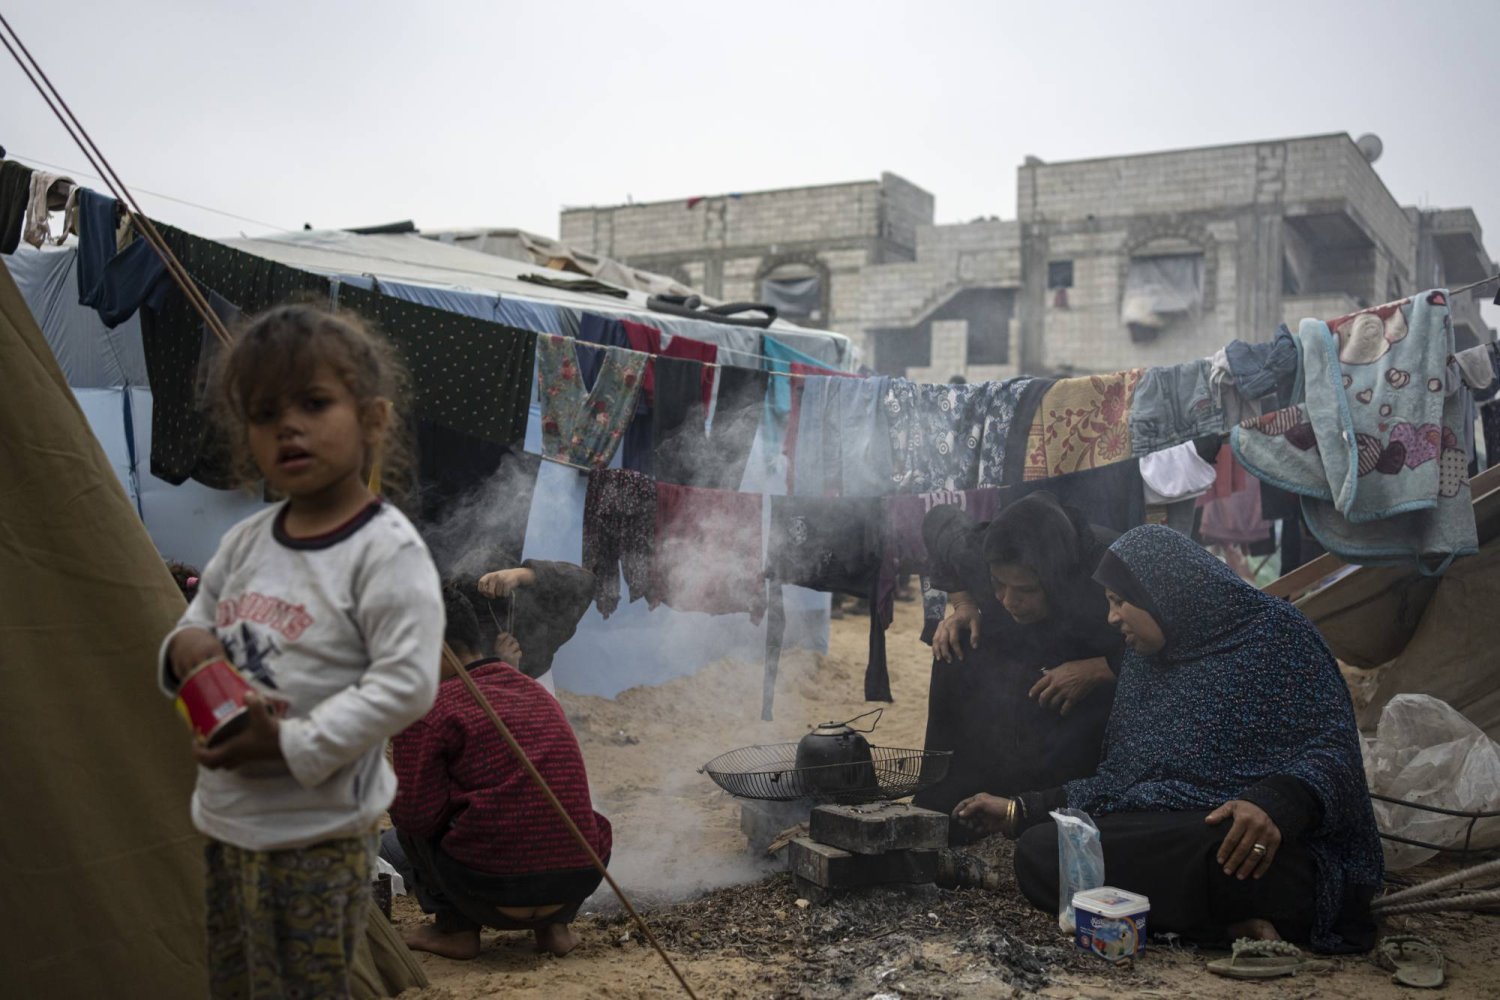  İsrail'in Gazze Şeridi'ne yönelik bombardımanı nedeniyle yerlerinden edilen Filistinliler, el-Mevasi bölgesindeki derme çatma bir çadır kampında yemek pişiriyor. (AP)